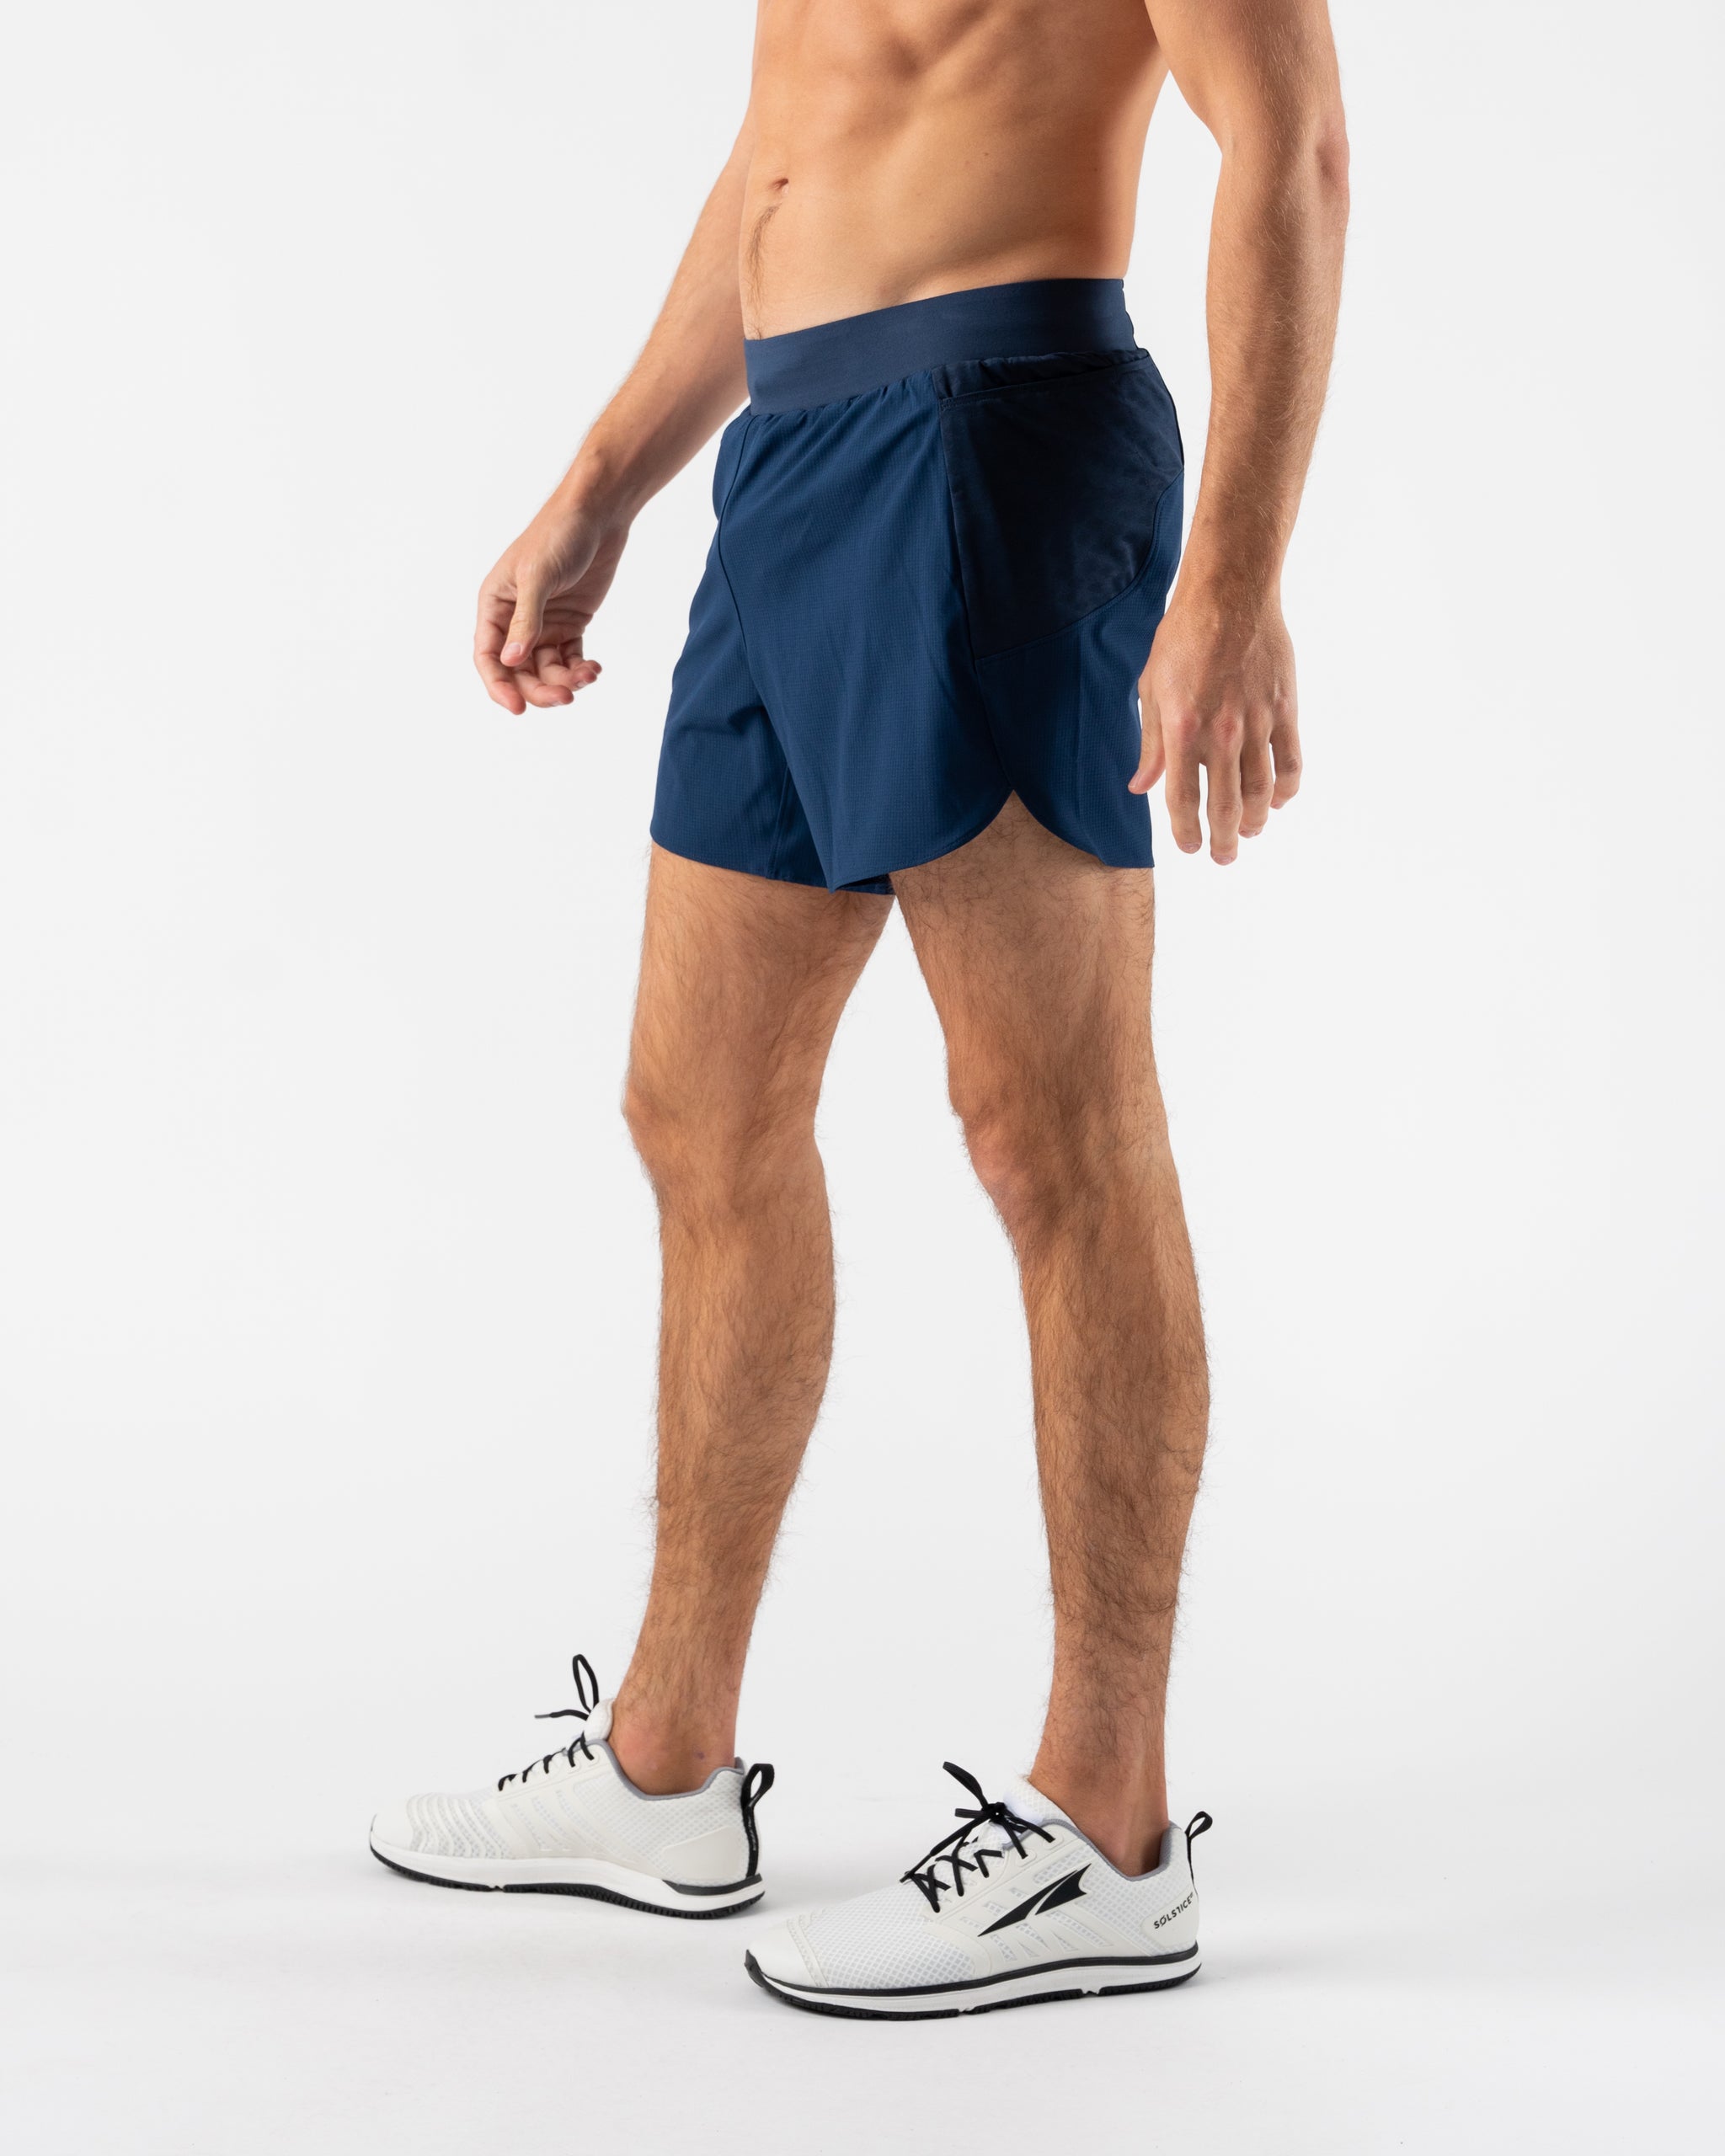 Men's Running Shorts - FKT 2.0 5